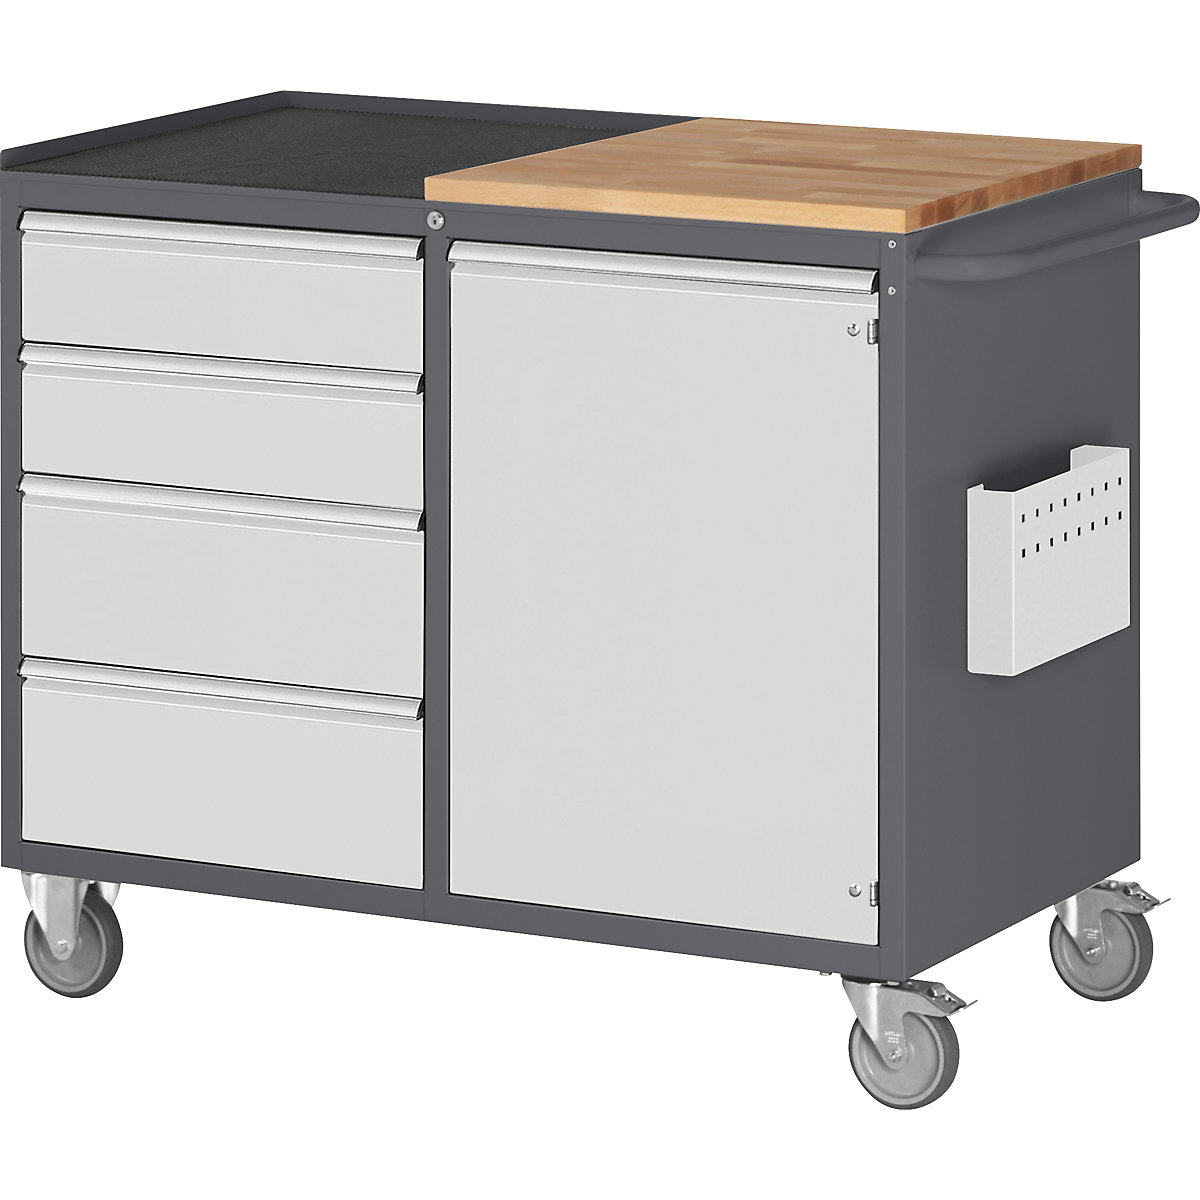 Banchi da lavoro compatti, con rotelle – RAU, 4 cassetti, 1 anta, piano di lavoro in legno e metallo, antracite / grigio chiaro-4